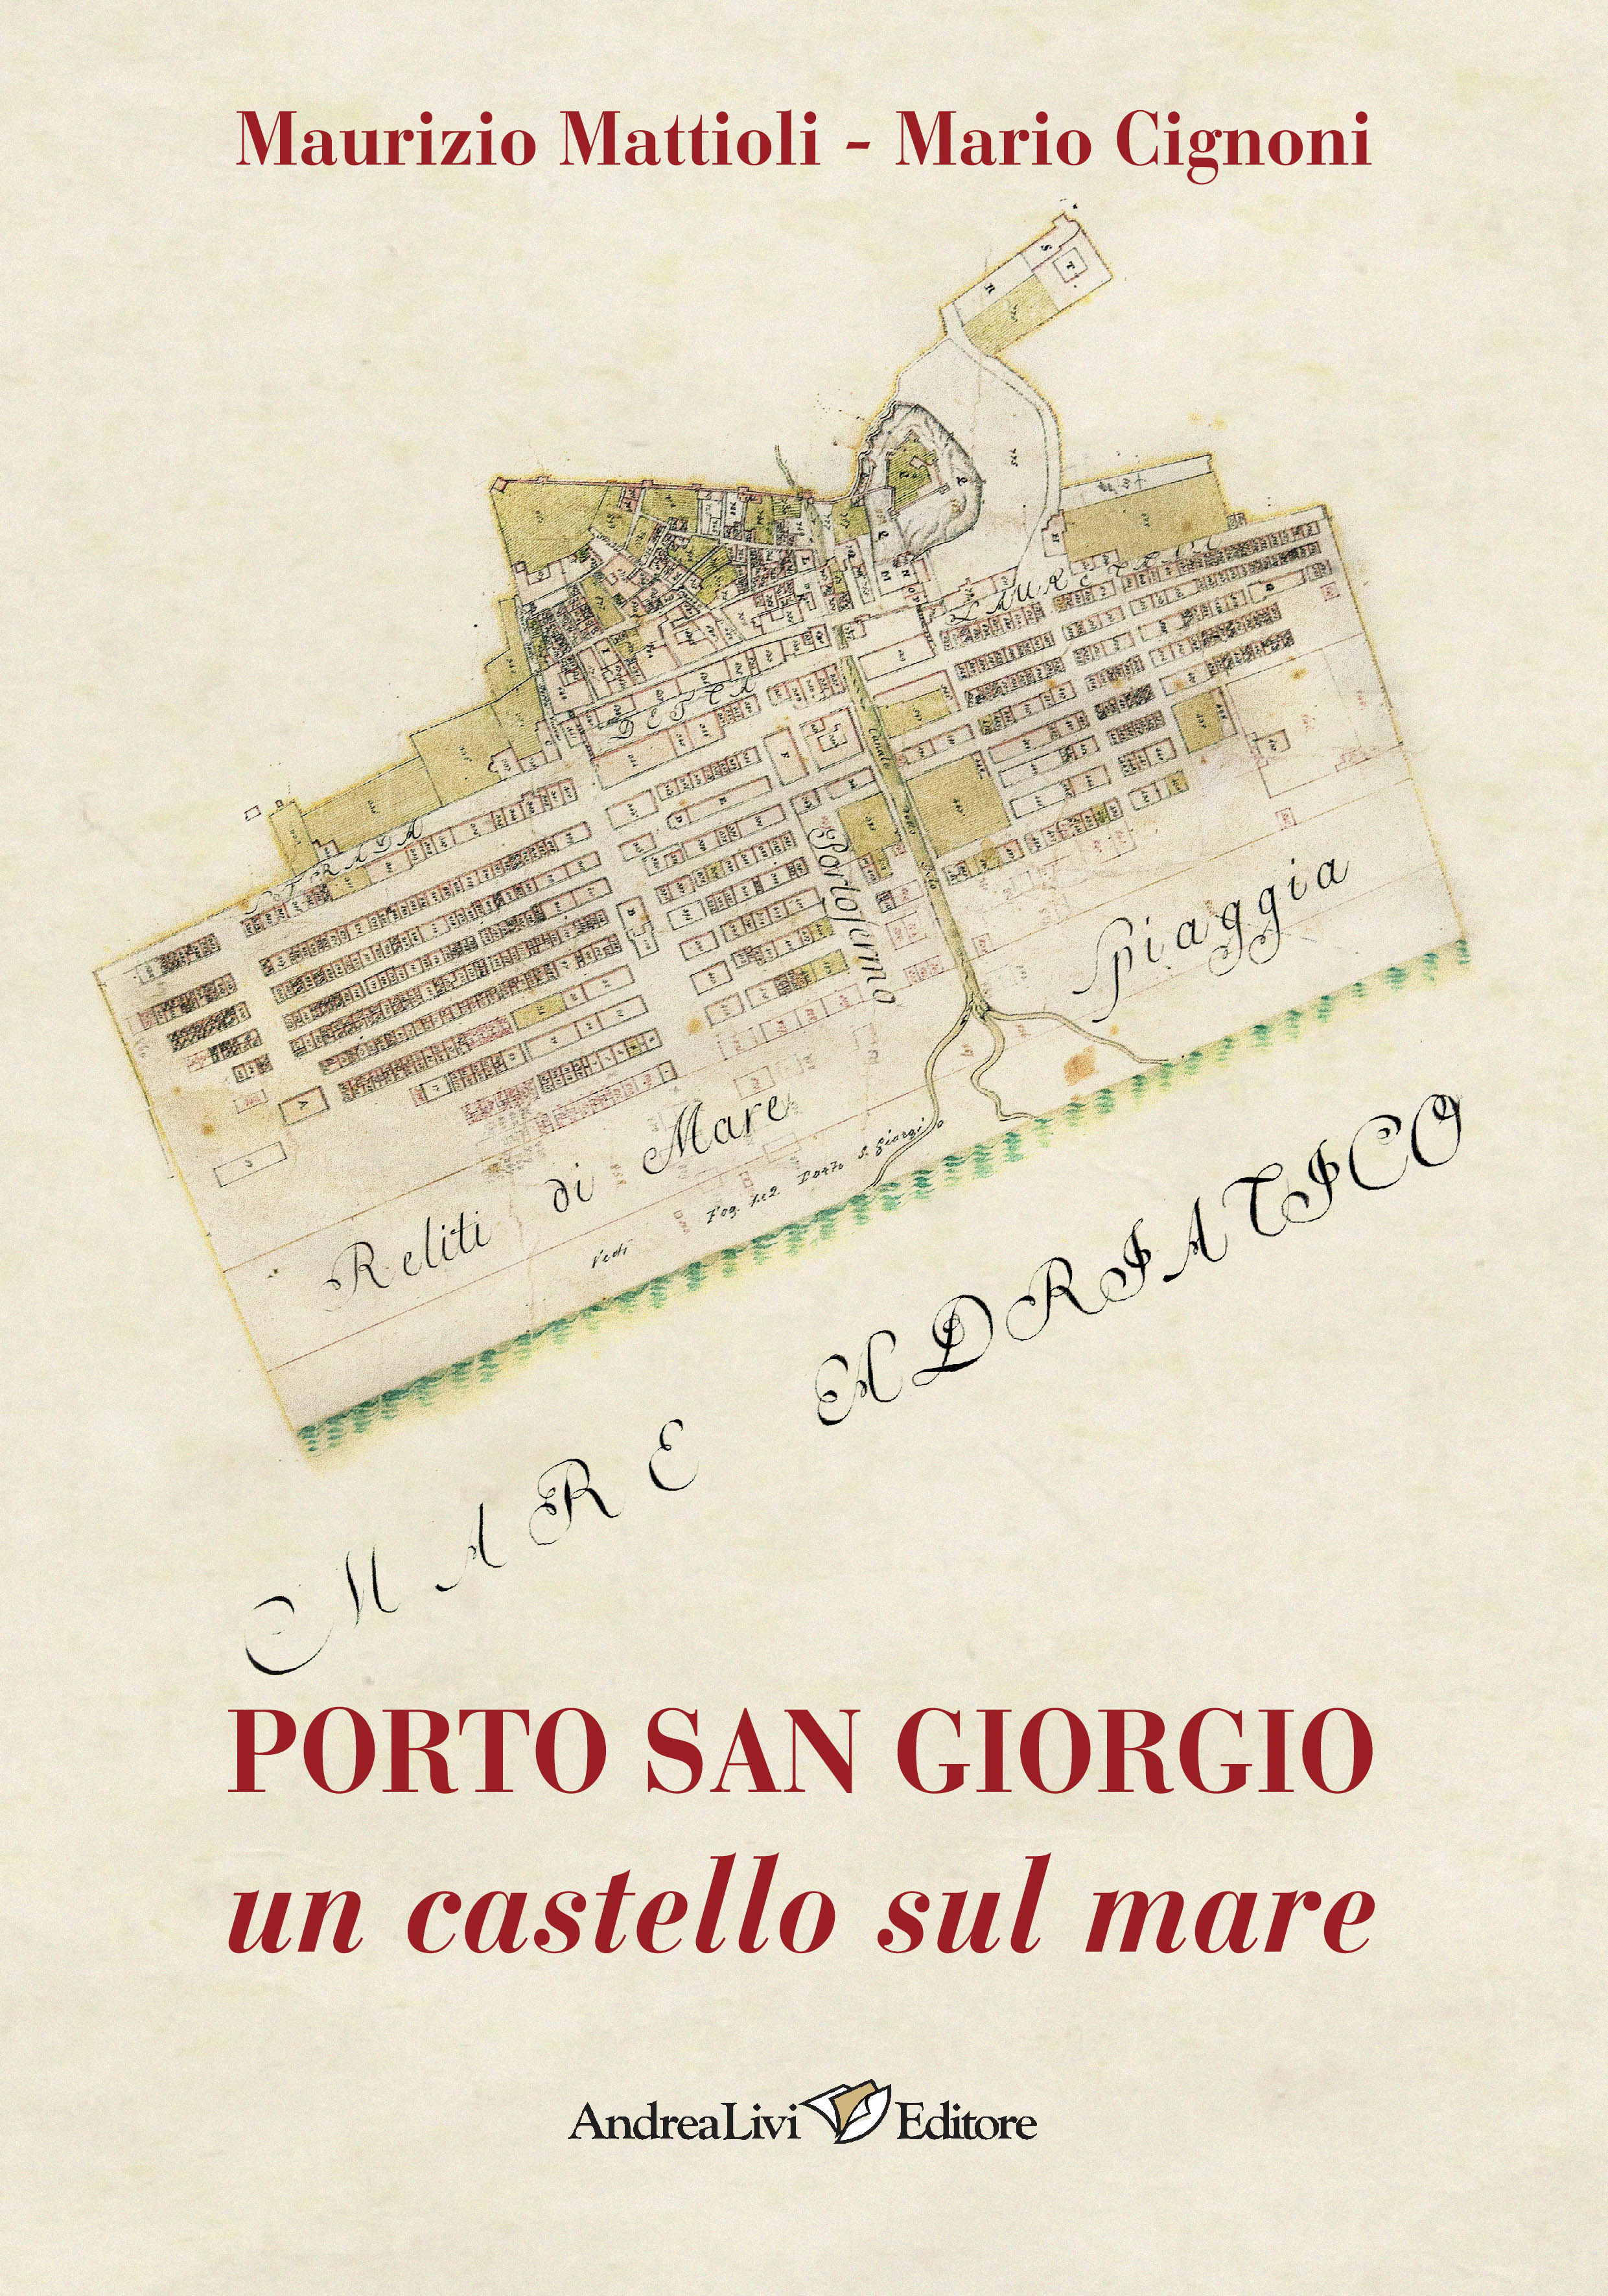 Maurizio Mattioli - Mario Cignoni, Porto San Giorgio un castello sul mare